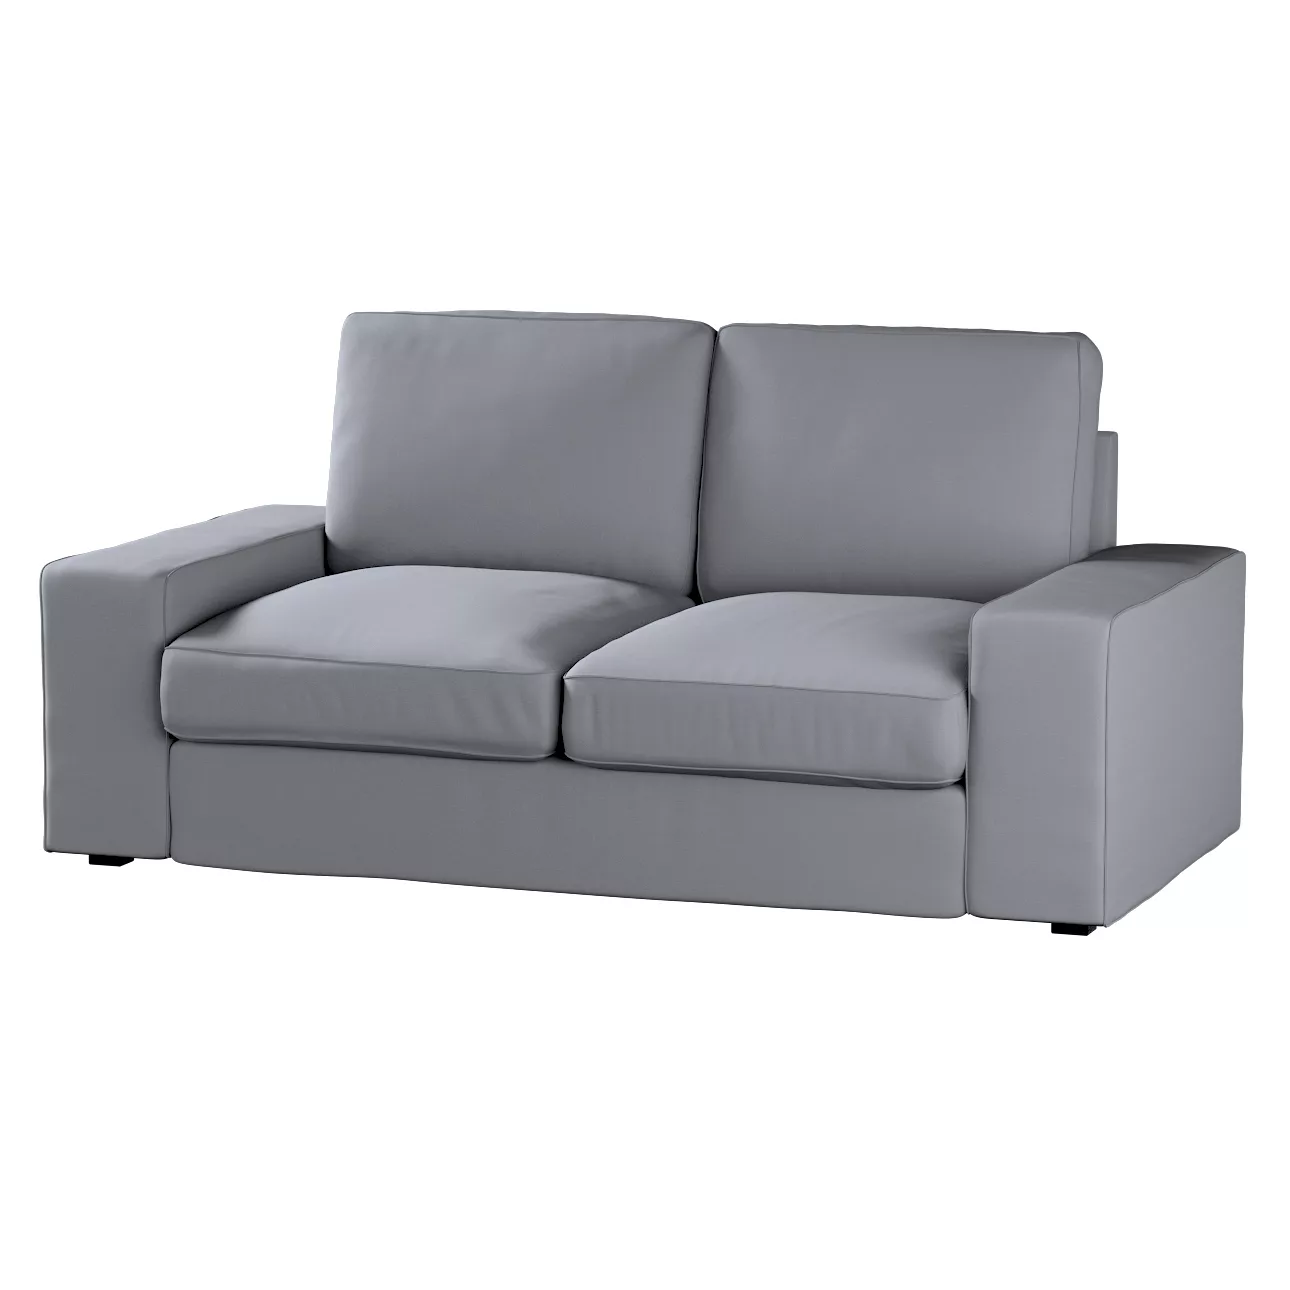 Bezug für Kivik 2-Sitzer Sofa, grau, Bezug für Sofa Kivik 2-Sitzer, Cotton günstig online kaufen